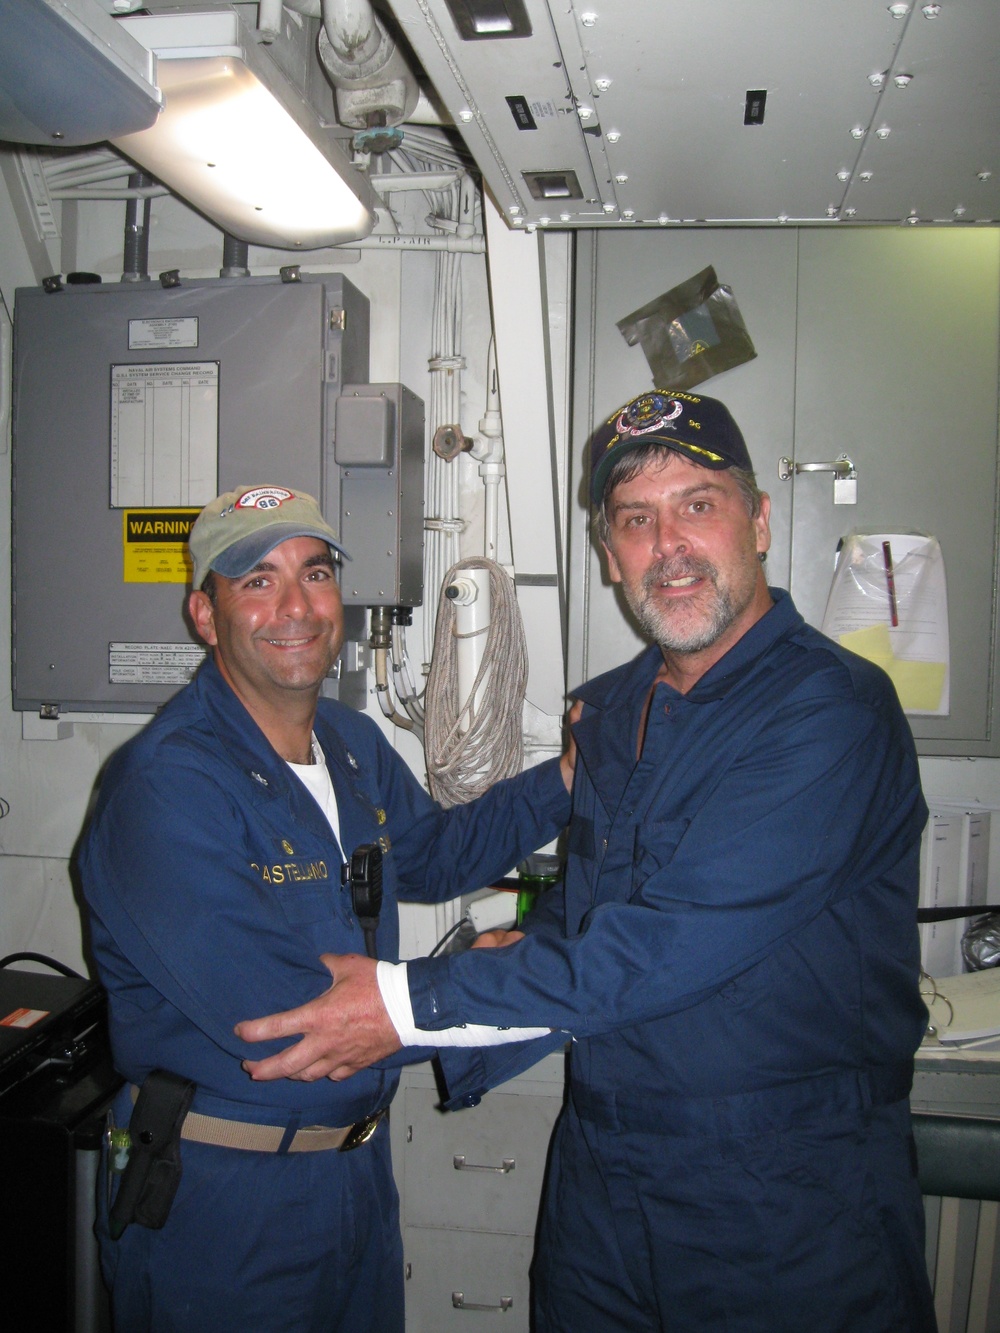 Maersk-Alabama Captain Rescued